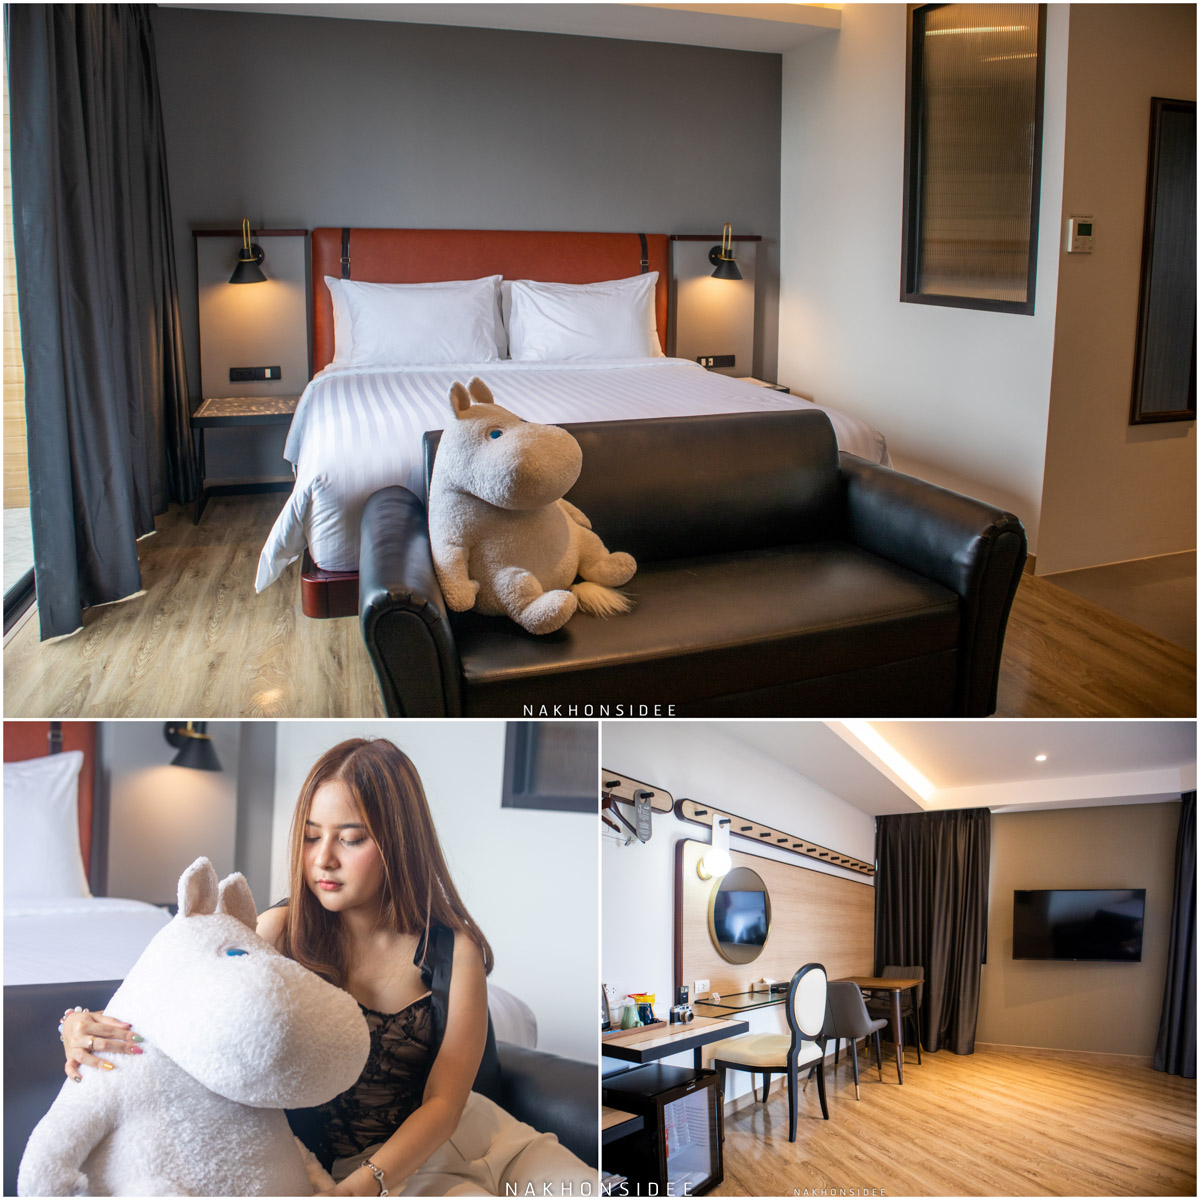 ห้องน่ารักๆ มีน้อนหมีให้ด้วยน้าา
 hotel,scarlett,nakhonsi,ที่พักเปิดใหม่,ใจกลางเมือง